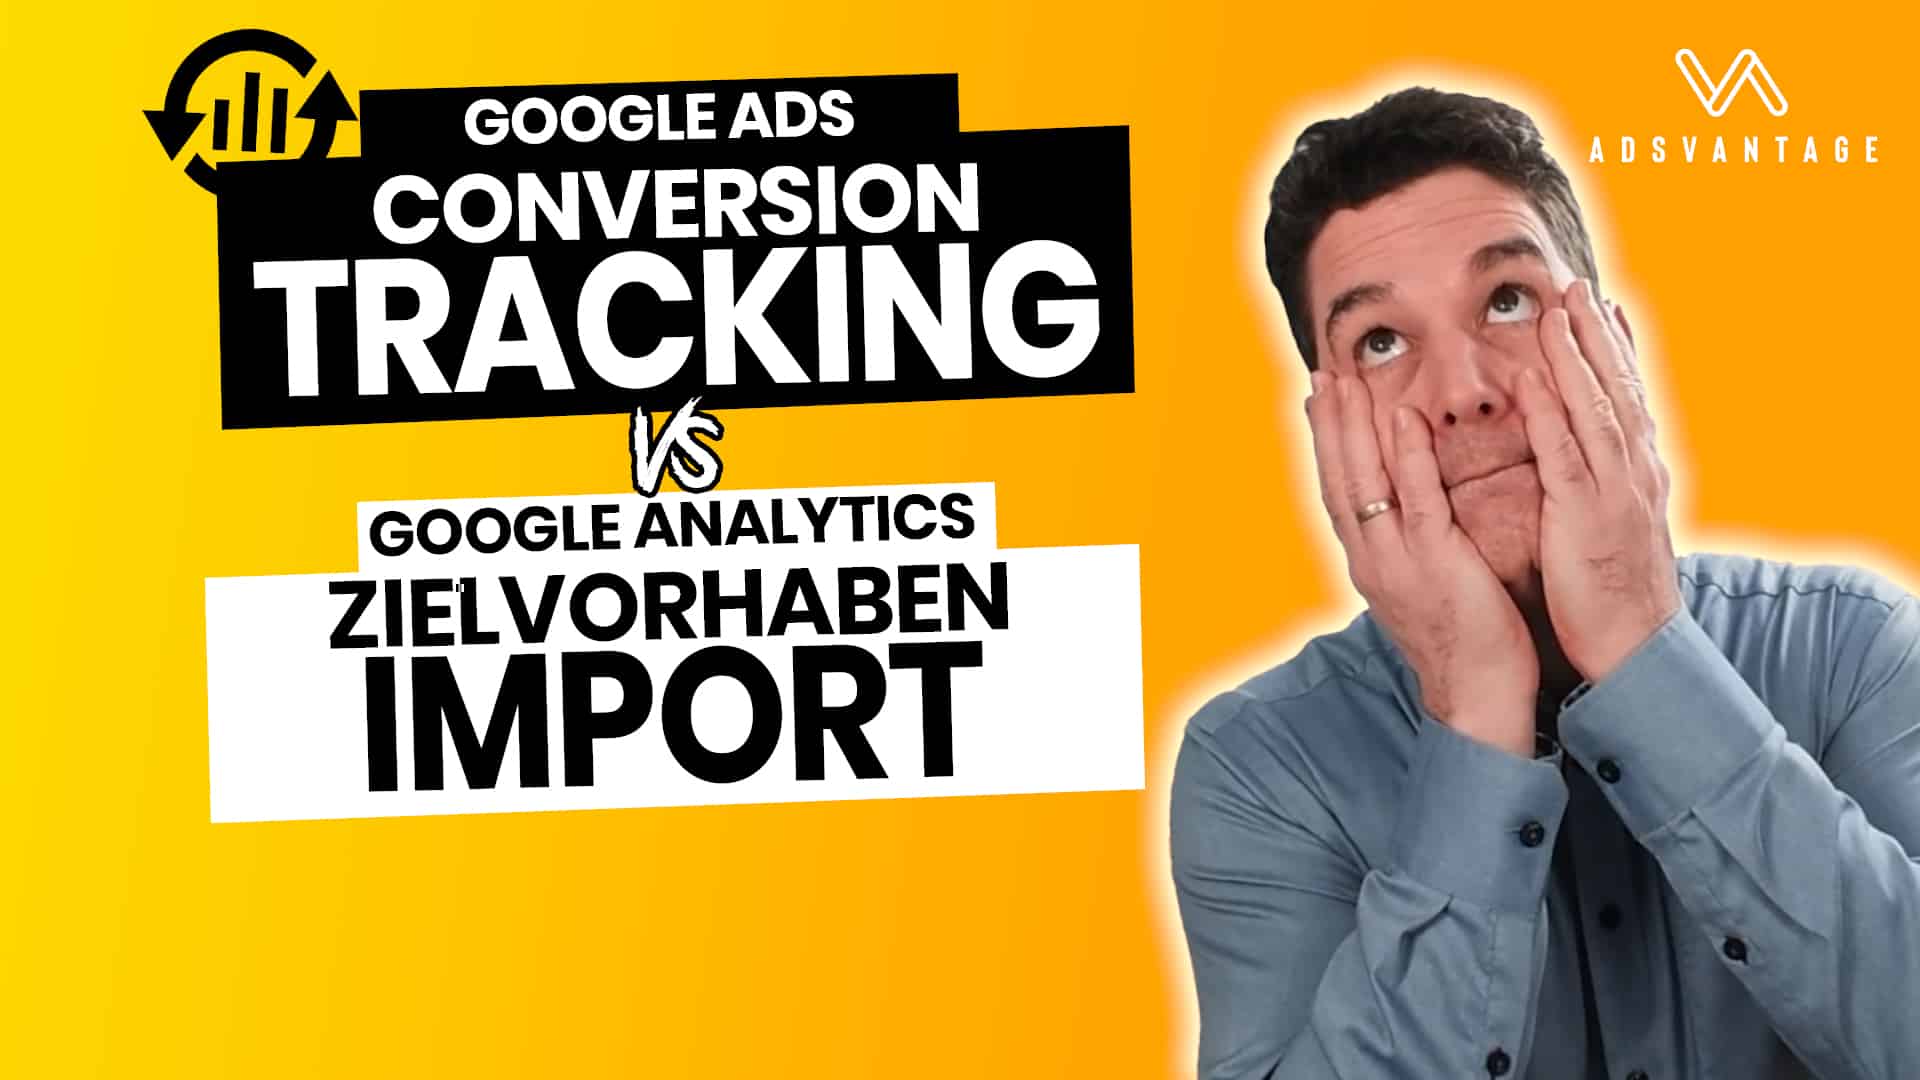 Google Ads Conversion Tracking vs. Google Analytics Zielvorhaben Import